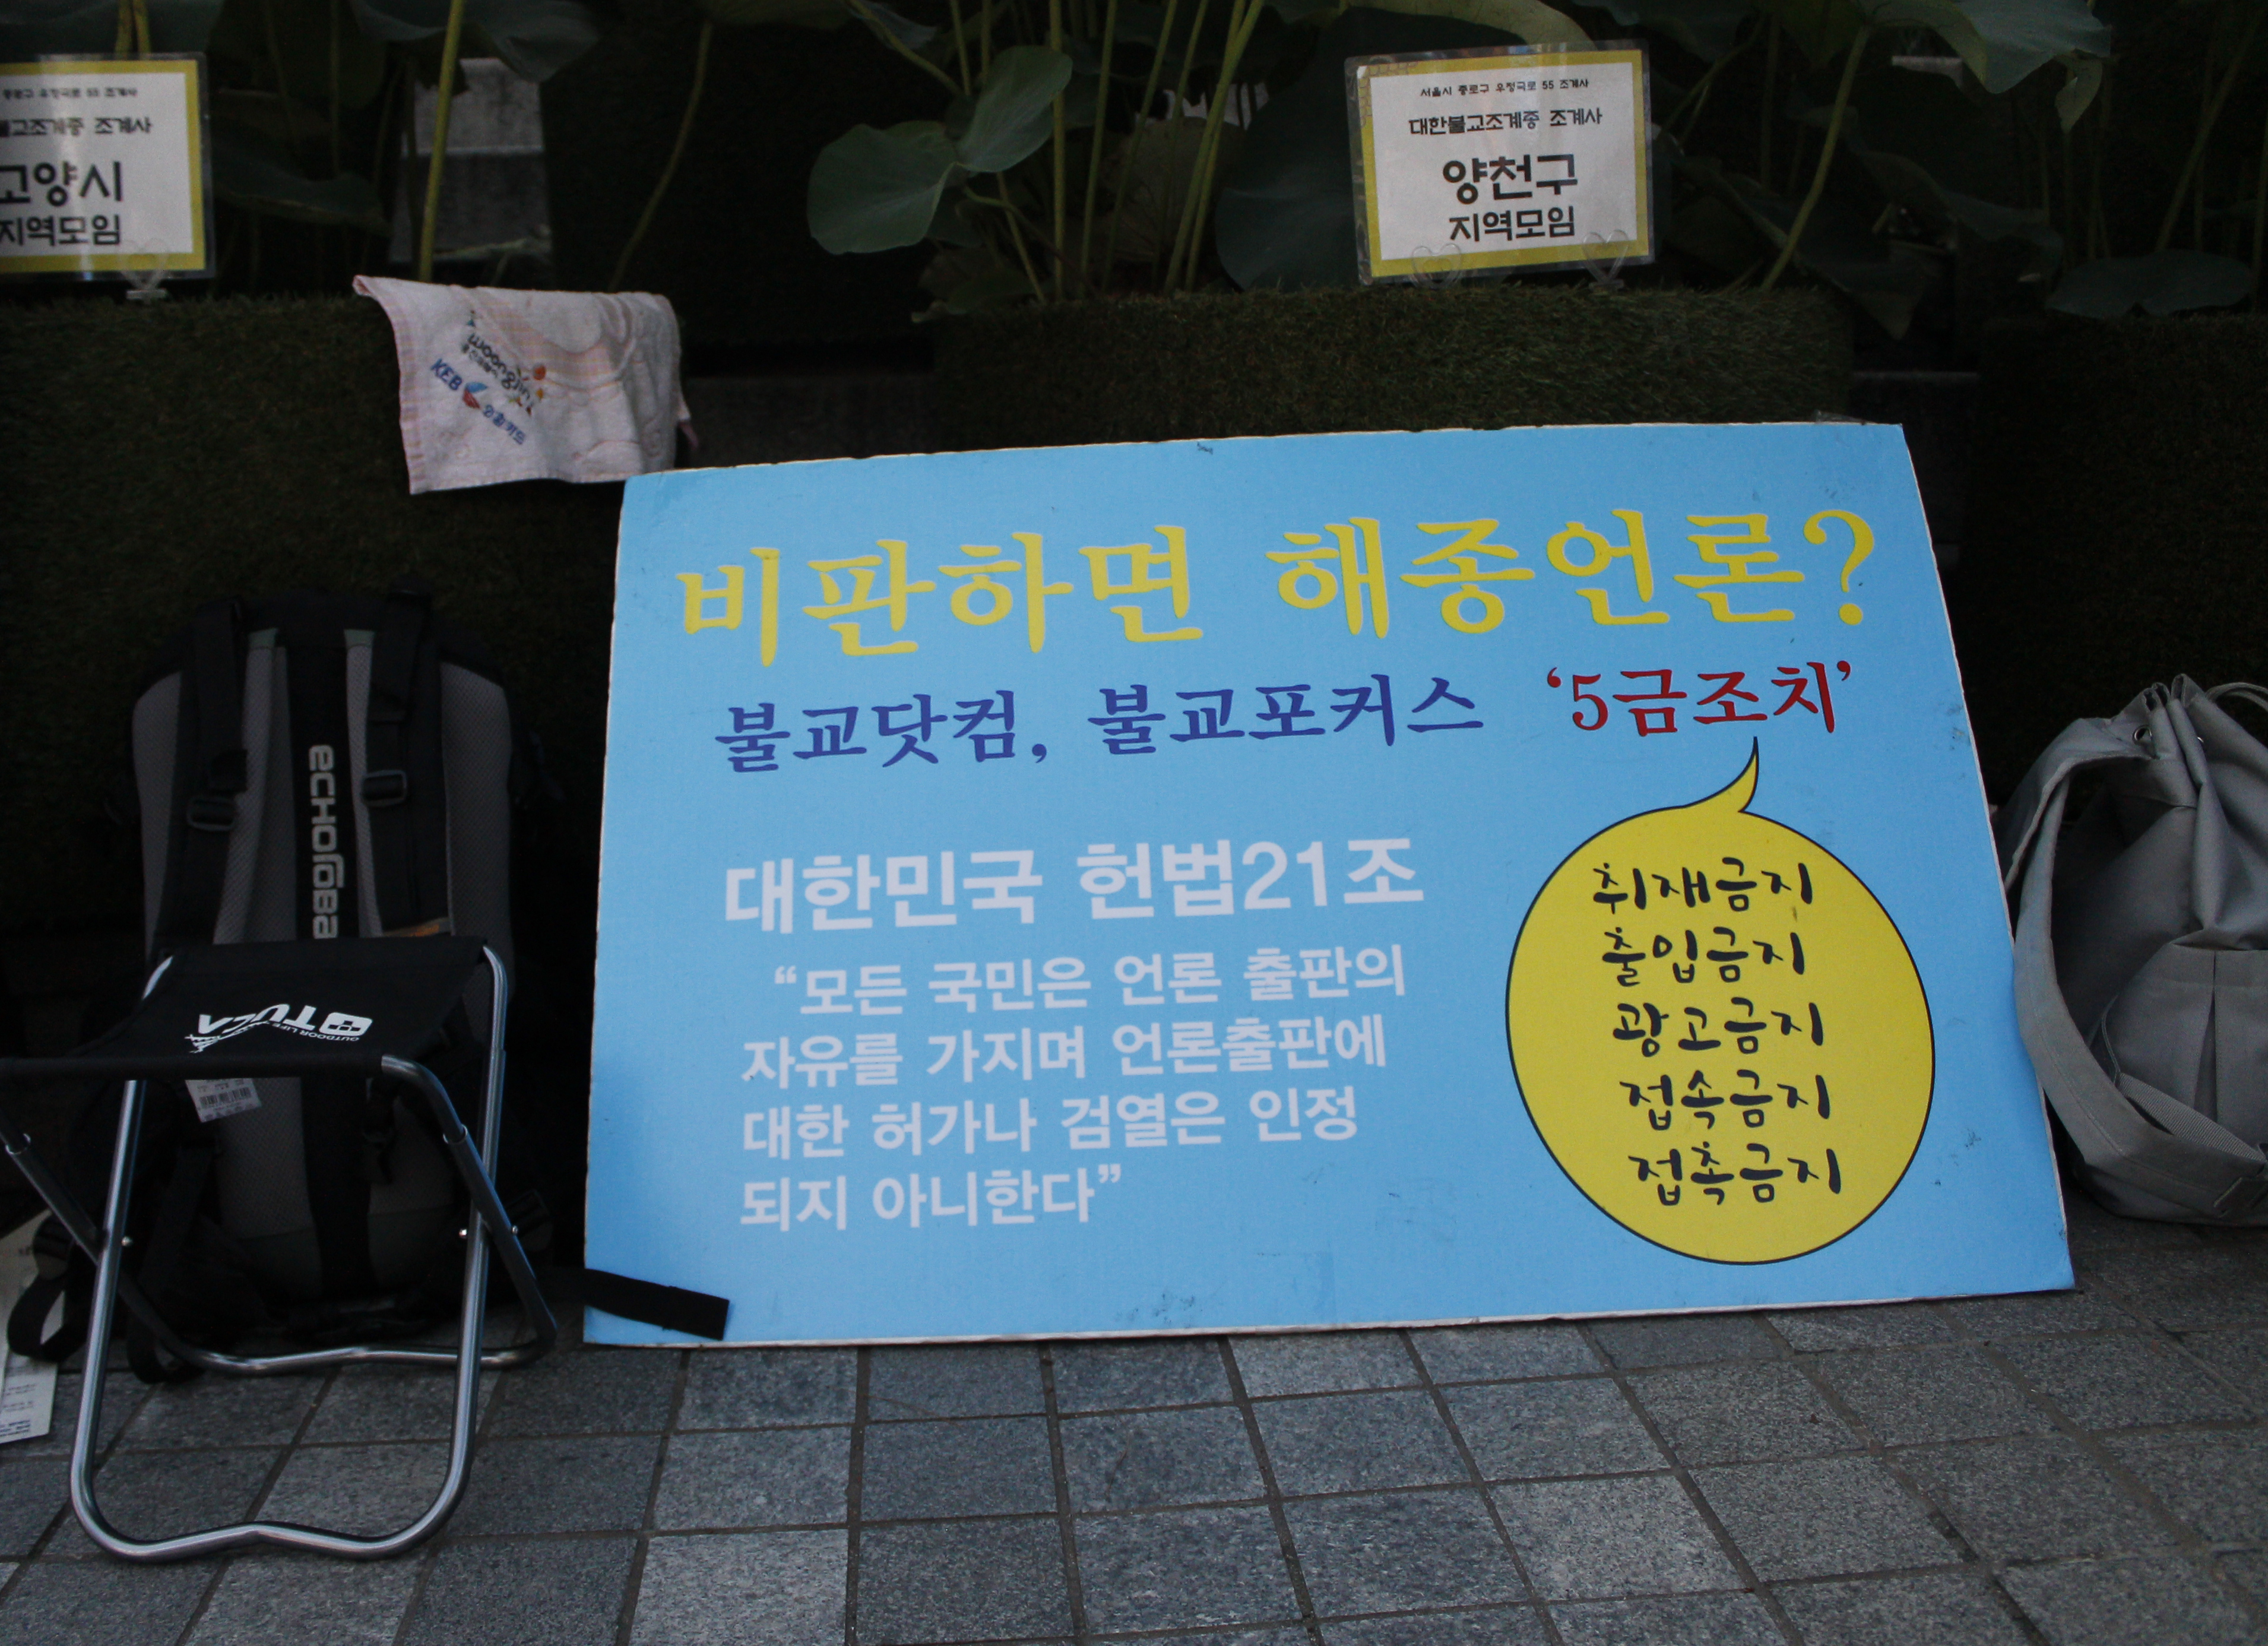 지난 2015년 조계종은 불교닷컴과 불교포커스를 '5금(禁) 조치' 했다. 사진은 서울 안국동 조계사 앞에 놓여 있는 피켓